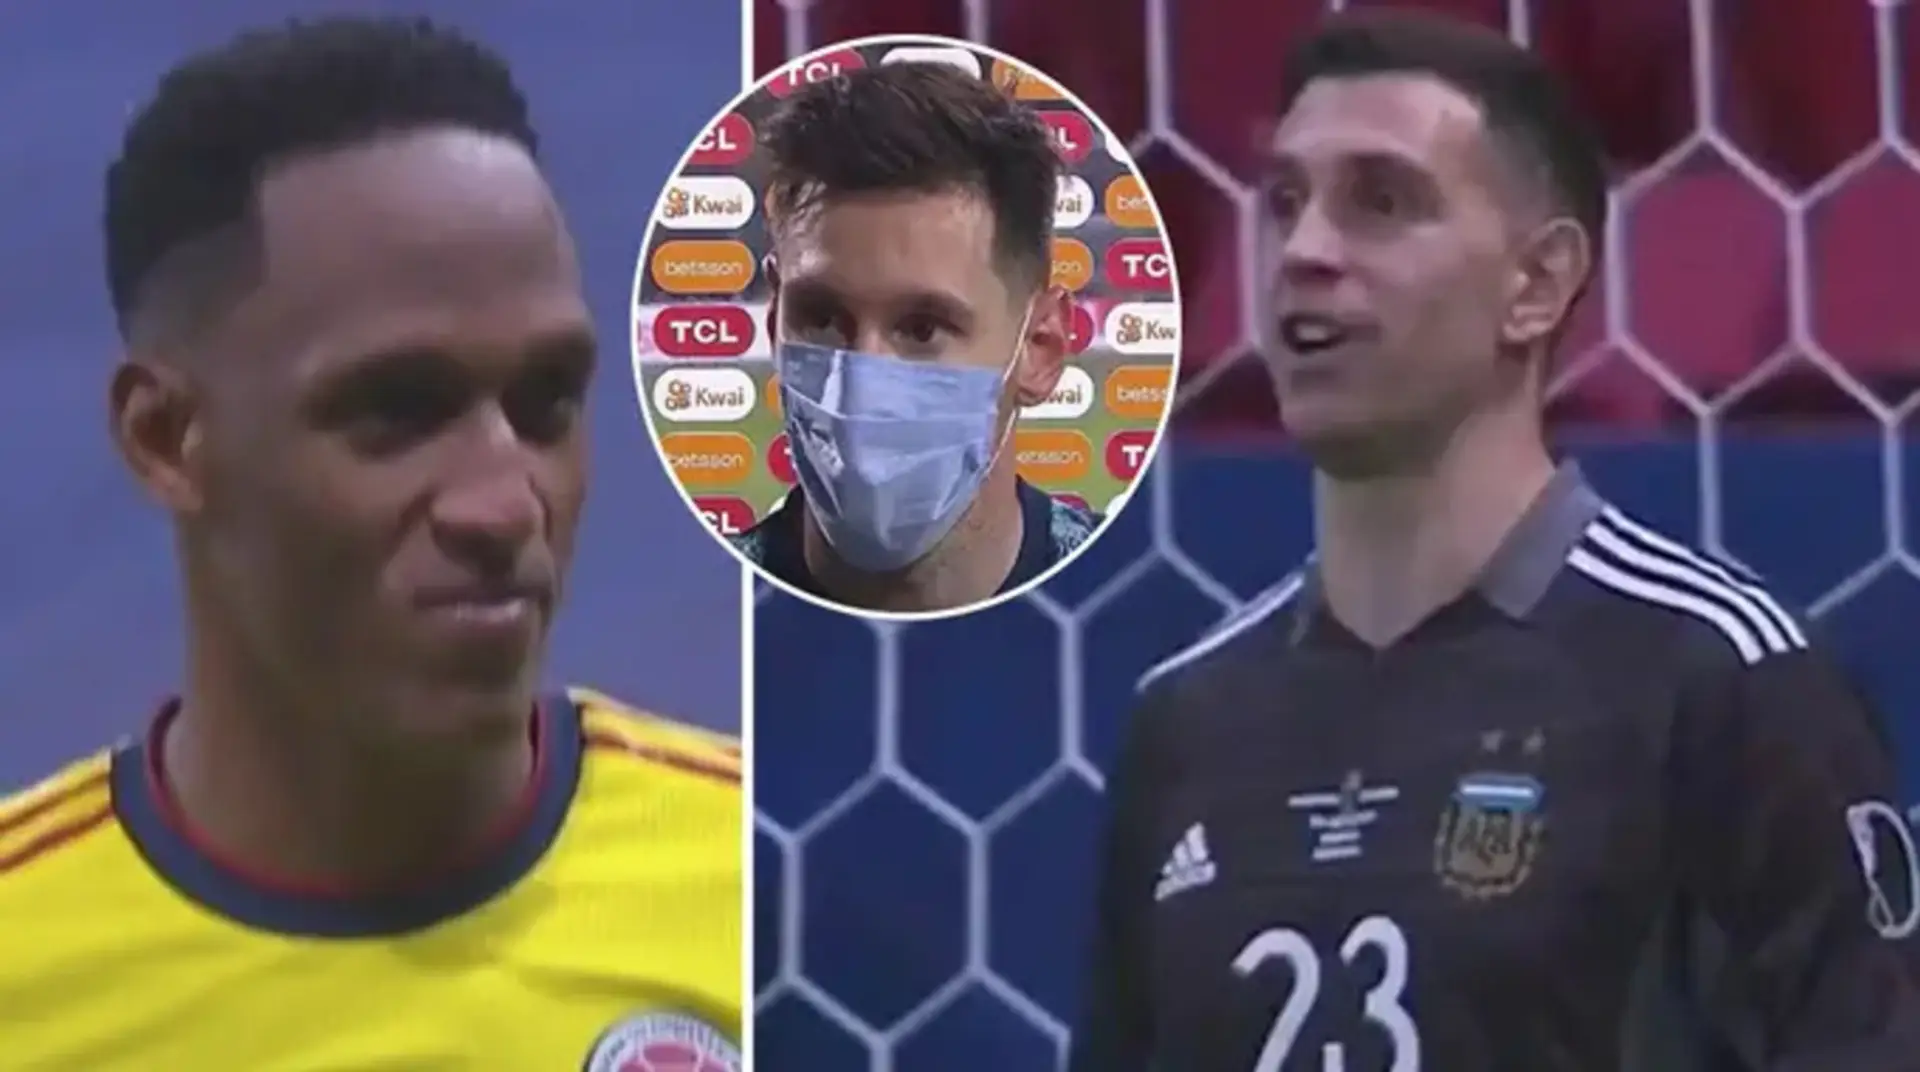 El portero argentino Martínez destruye mentalmente a los jugadores de Colombia en la tanda de penaltis, Messi lo llama 'fenómeno'